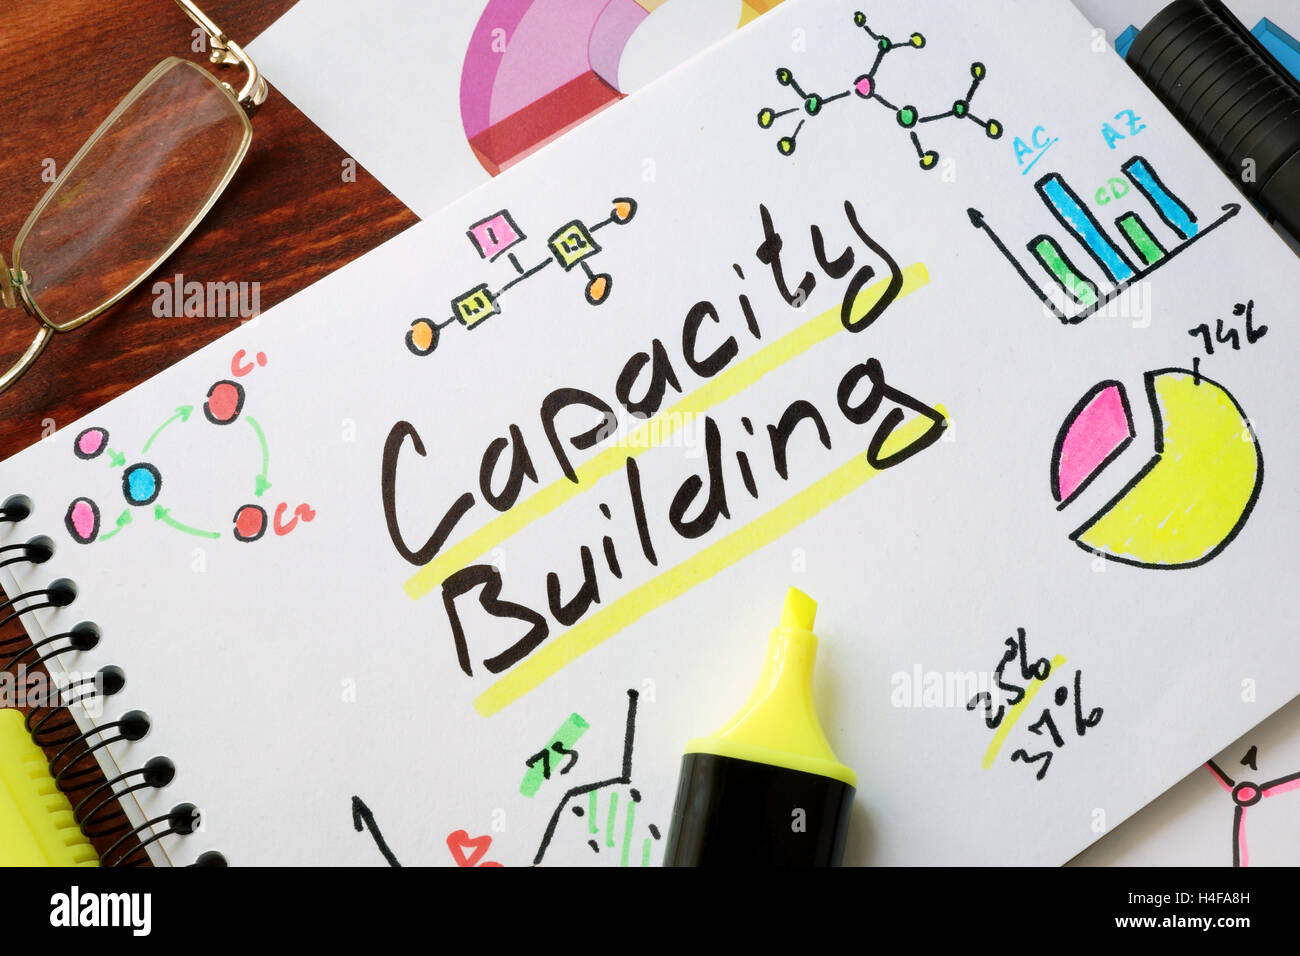 Capacity Building in einem Notizbuch mit Stift geschrieben. Stockfoto